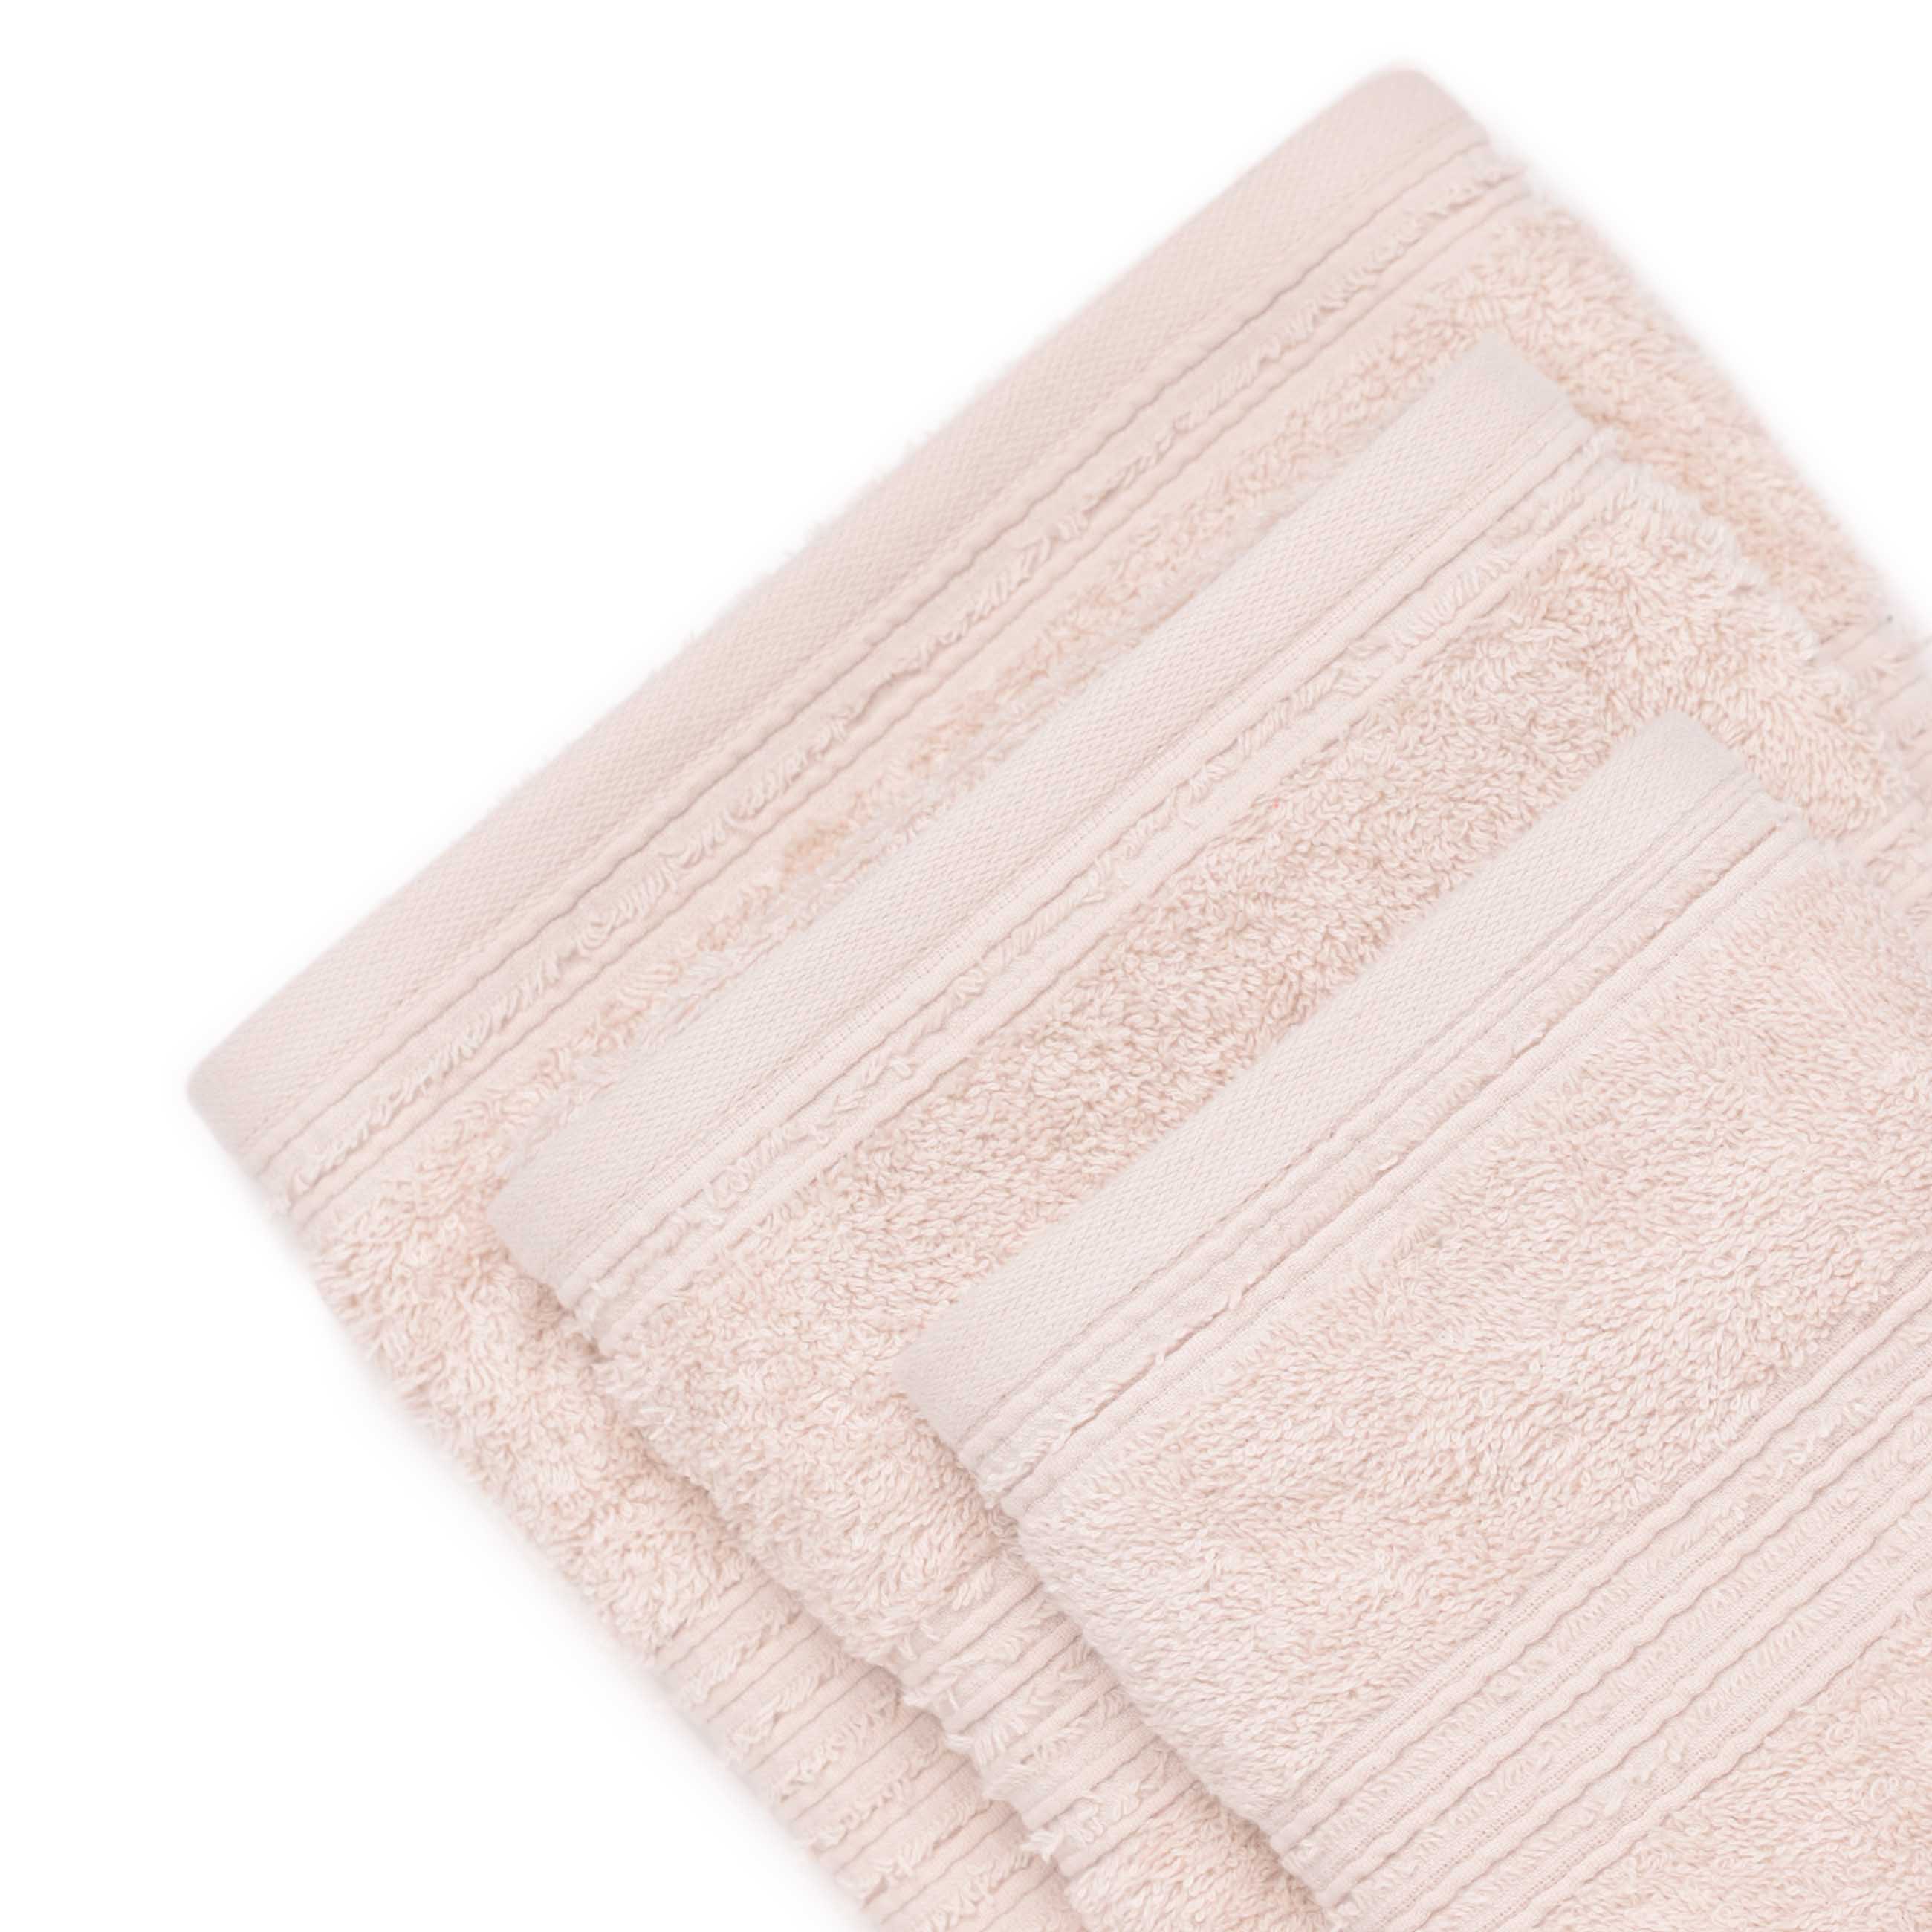 Towel set, 40x60 / 50x90 / 70x140 cm, 3 pcs, cotton, beige, Natural cotton изображение № 3